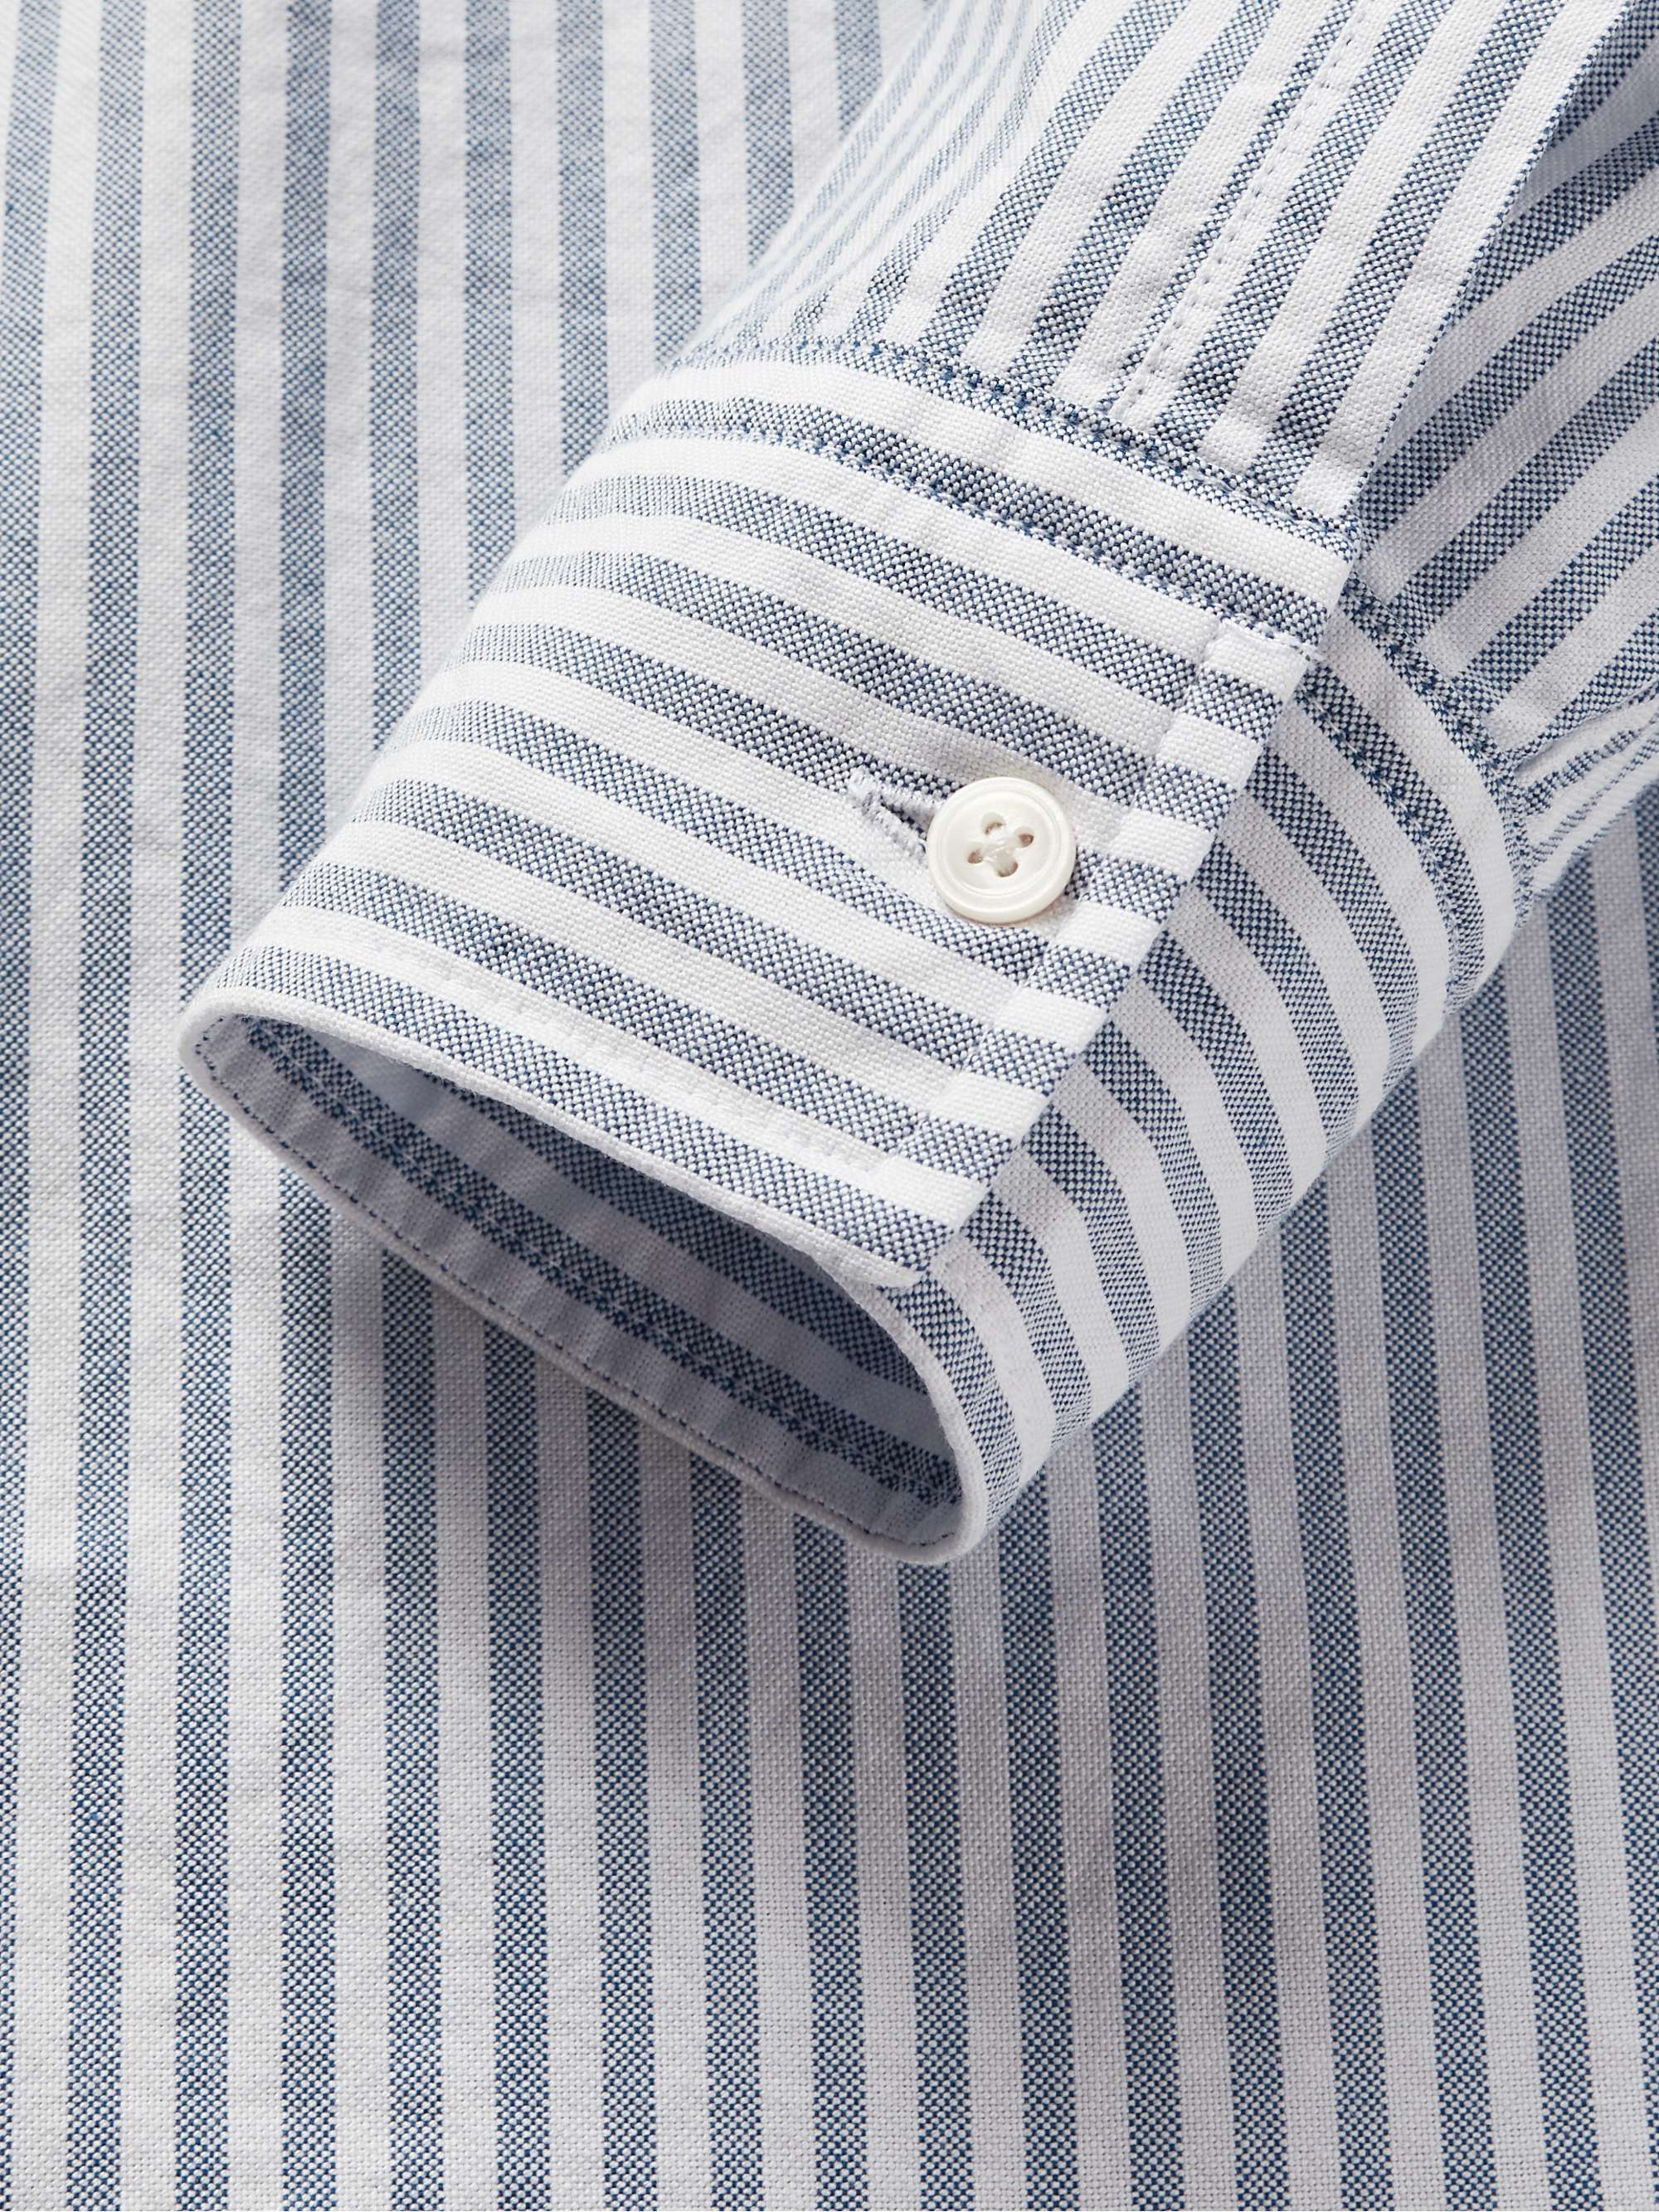 NN07 Levon Button-Down Collar Striped Cotton Oxford Shirt